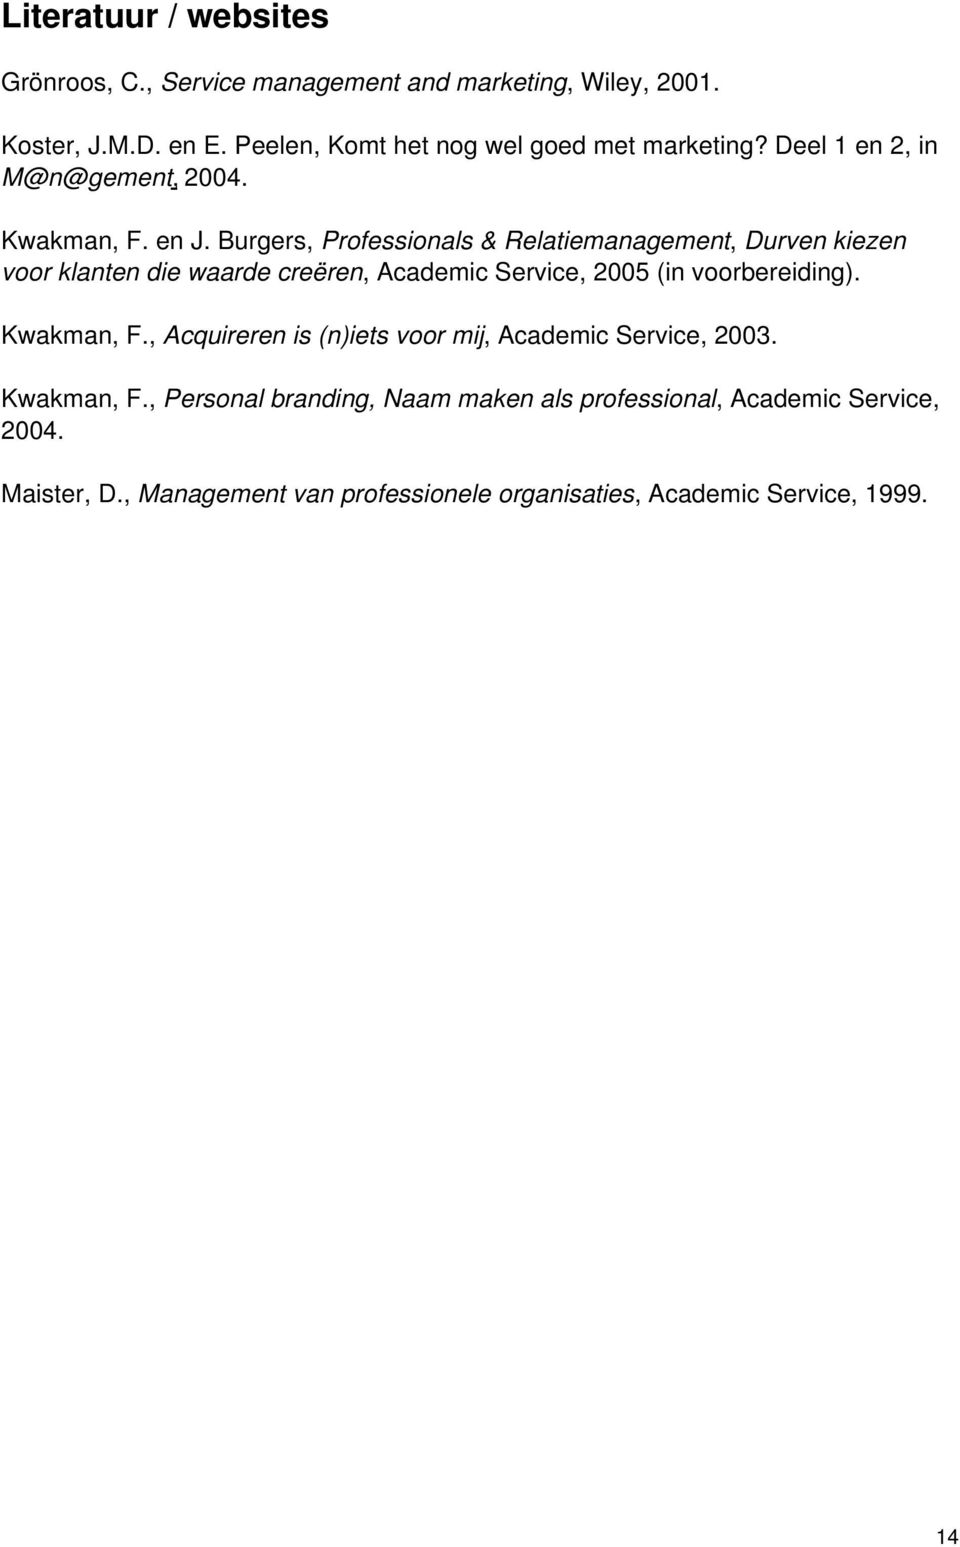 Burgers, Professionals & Relatiemanagement, Durven kiezen voor klanten die waarde creëren, Academic Service, 2005 (in voorbereiding).